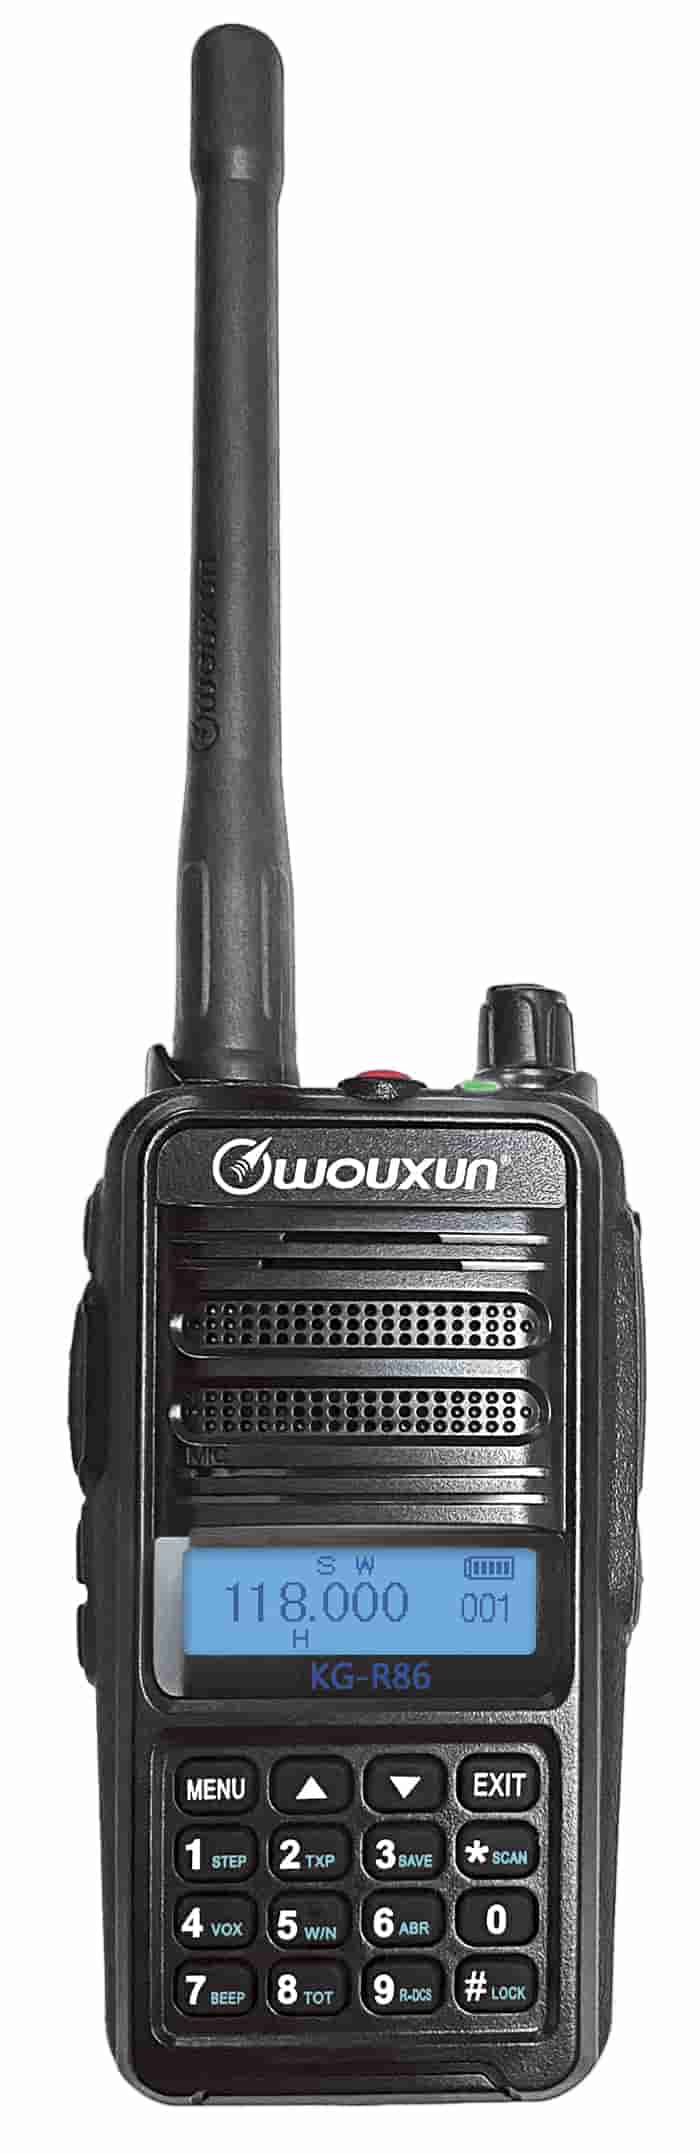 Wouxun Airband Radio KG-R86